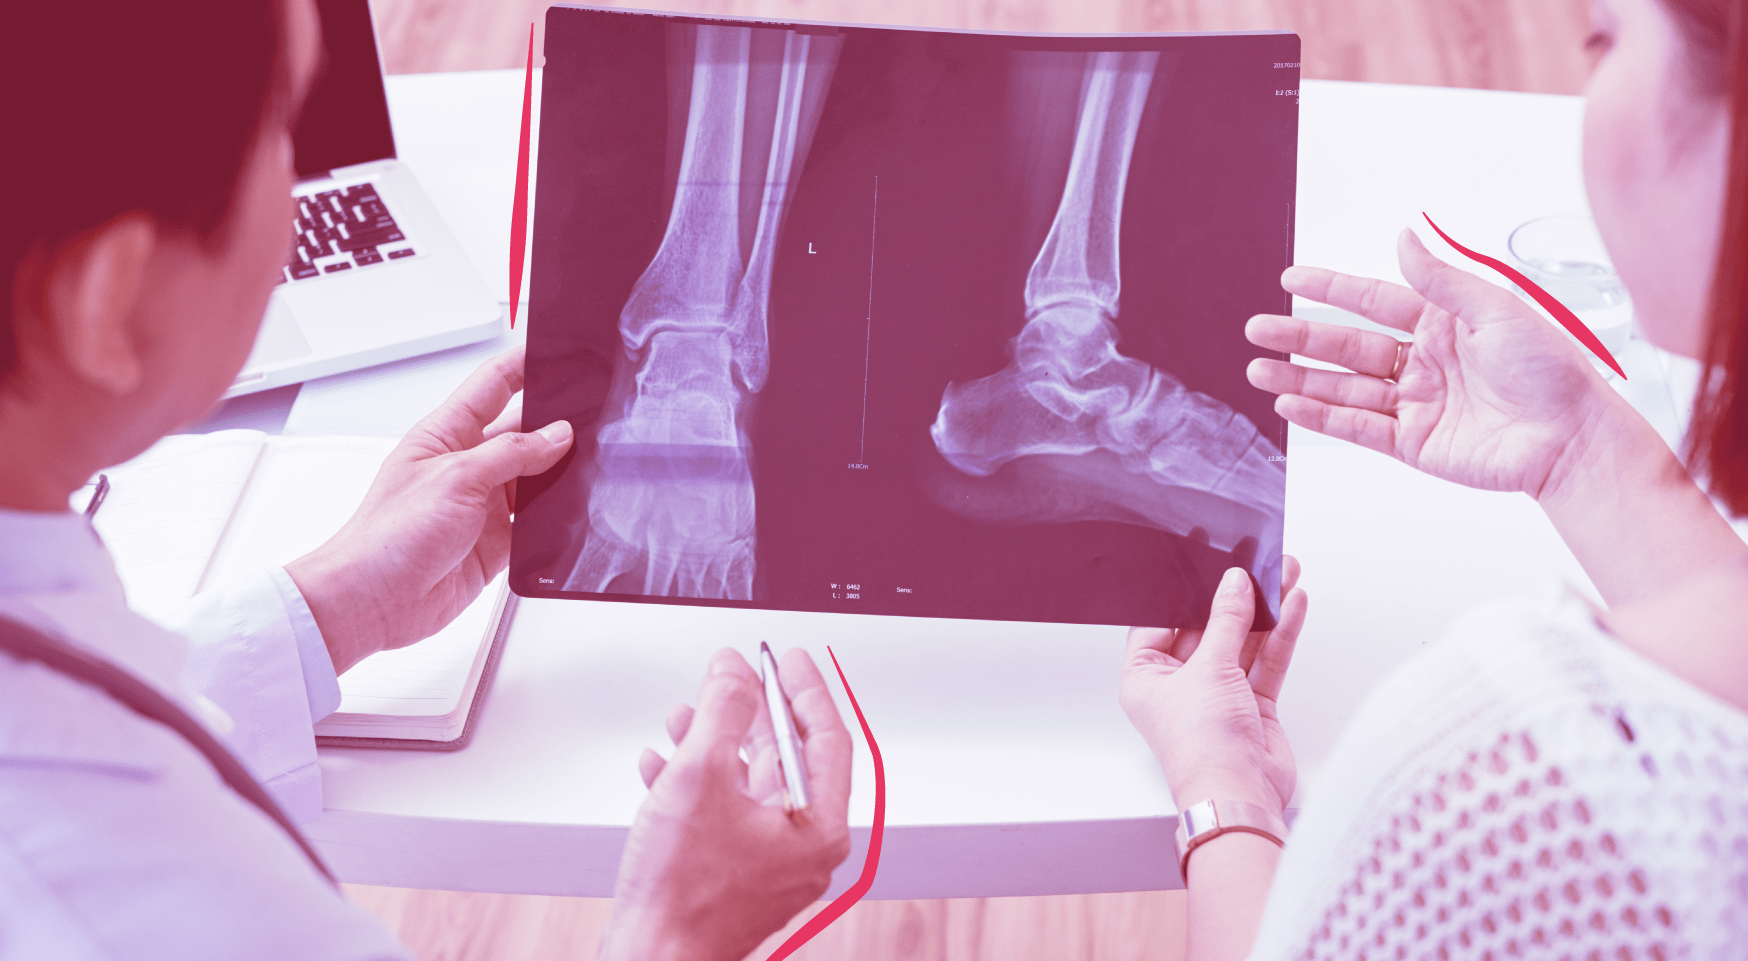 Ortopedia: o papel do ortopedista na saúde ocupacional para a prevenção de acidentes de trabalho